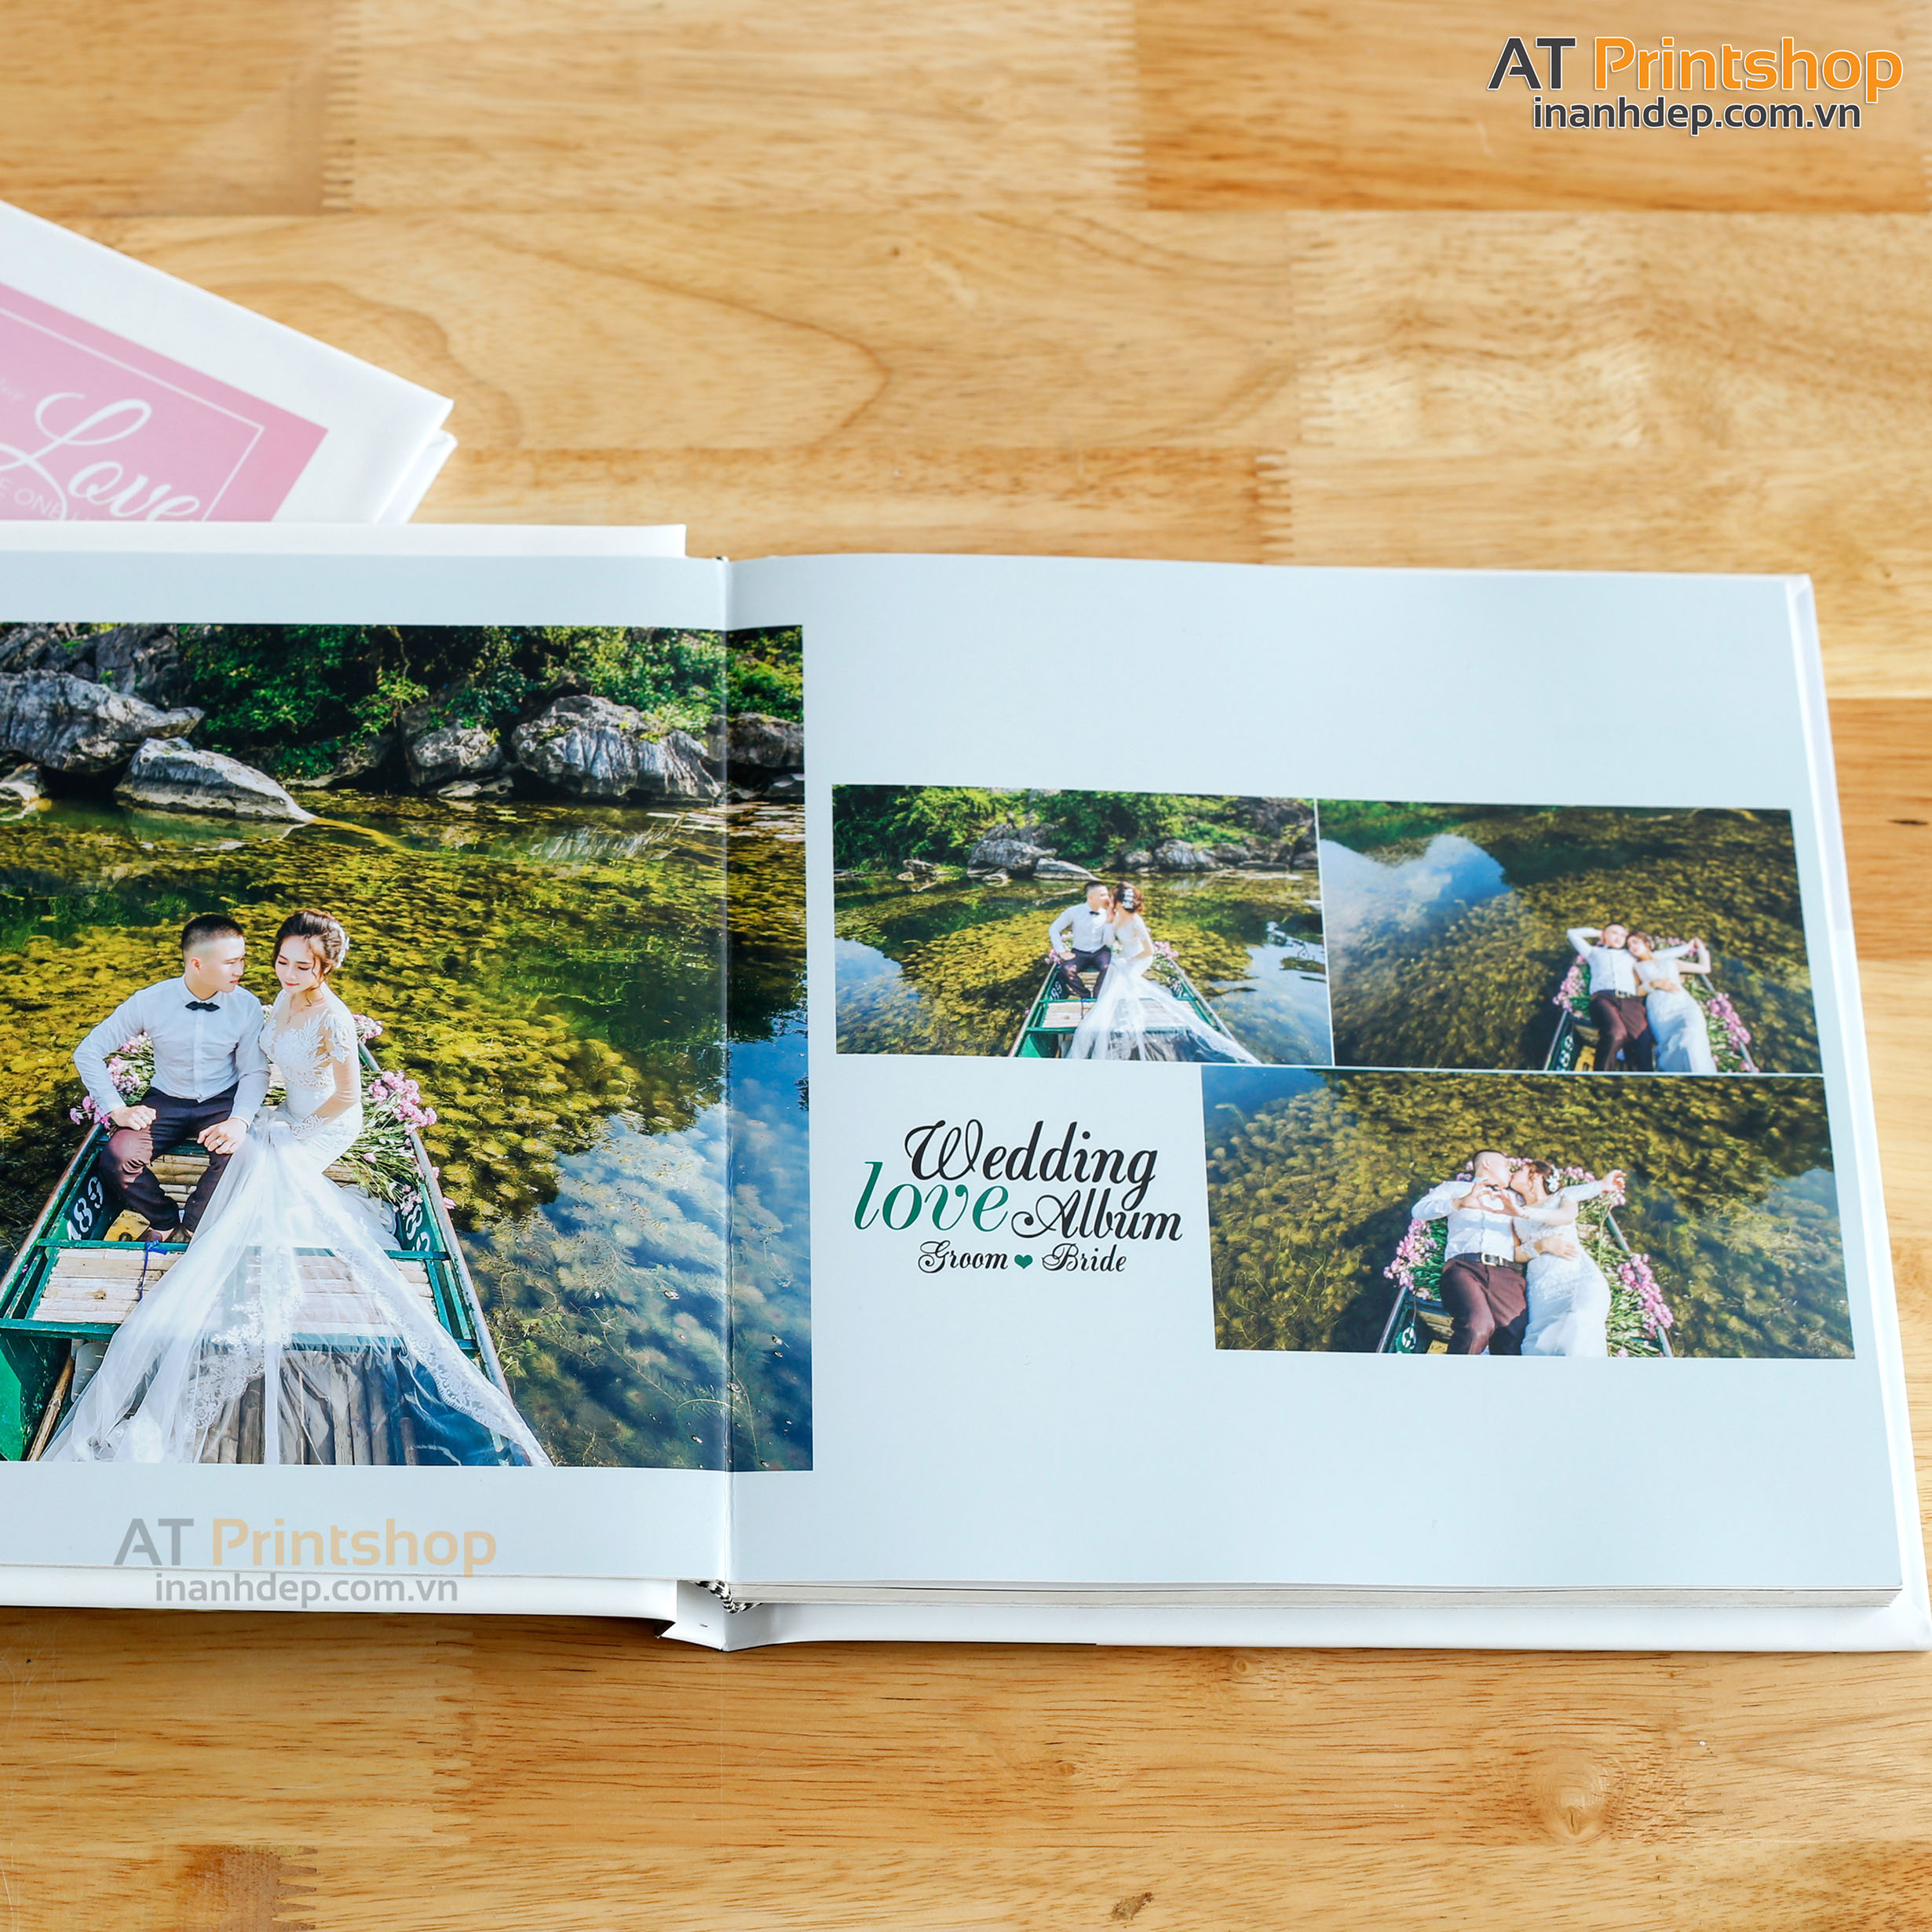 Photobook cưới giúp bạn tạo ra một dấu chân đáng nhớ về ngày cưới của mình. Với sự kết hợp giữa công nghệ in ấn hiện đại và sự sáng tạo của bạn, sản phẩm này sẽ là một món quà đẹp và ý nghĩa dành cho đôi uyên ương.